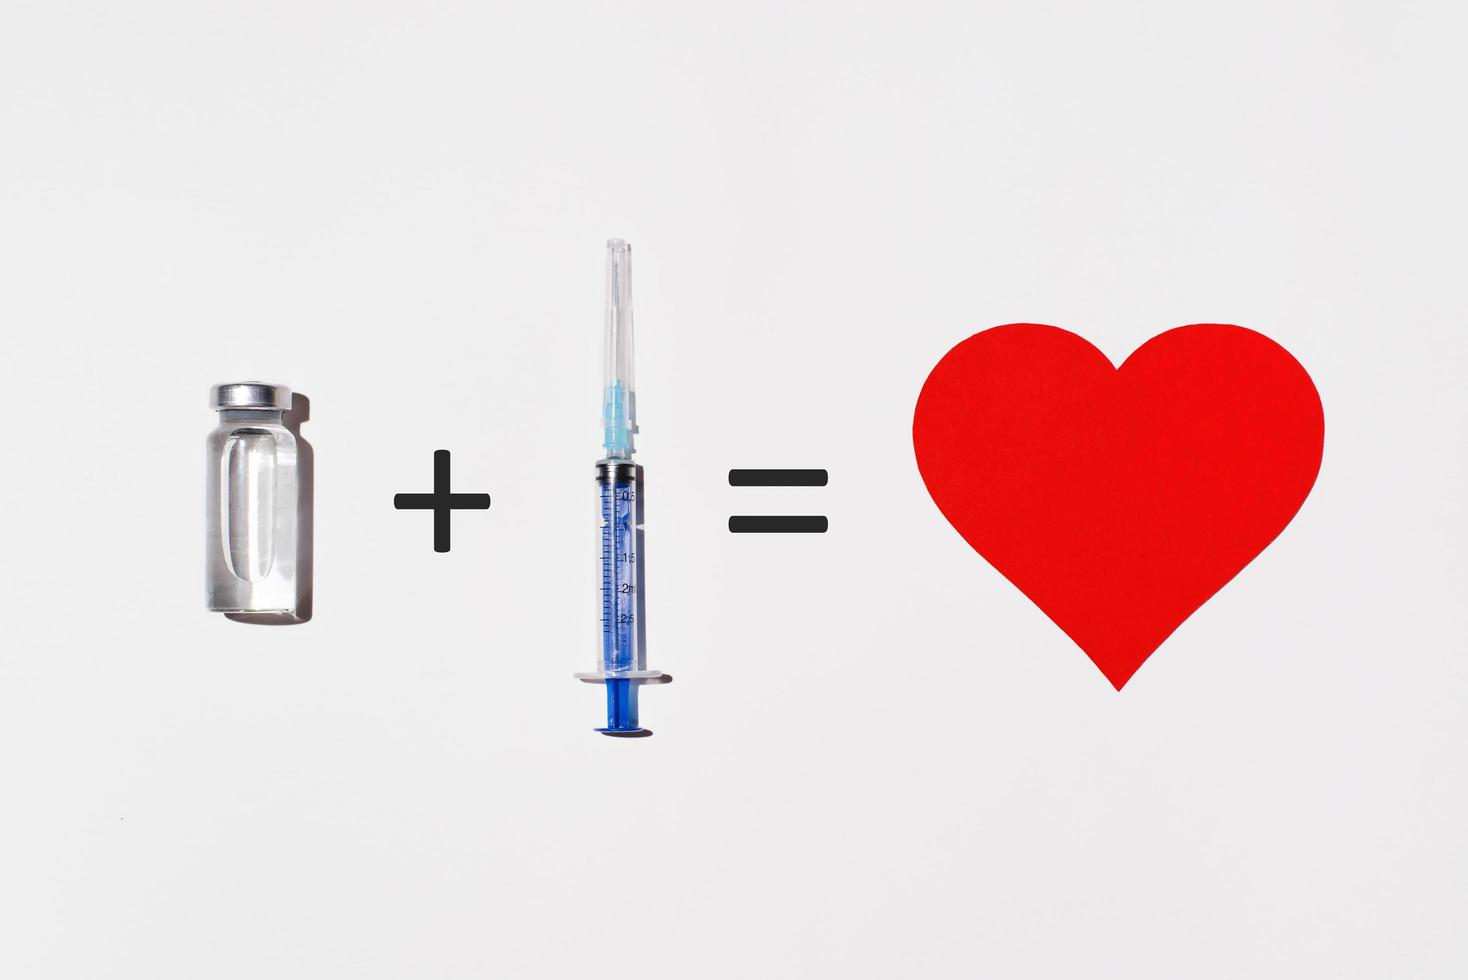 concept créatif des avantages pour la santé de la vaccination. flacon de vaccin, seringue et coeur sur fond blanc, plat. exemple mathématique illustrant l'innocuité d'un vaccin photo